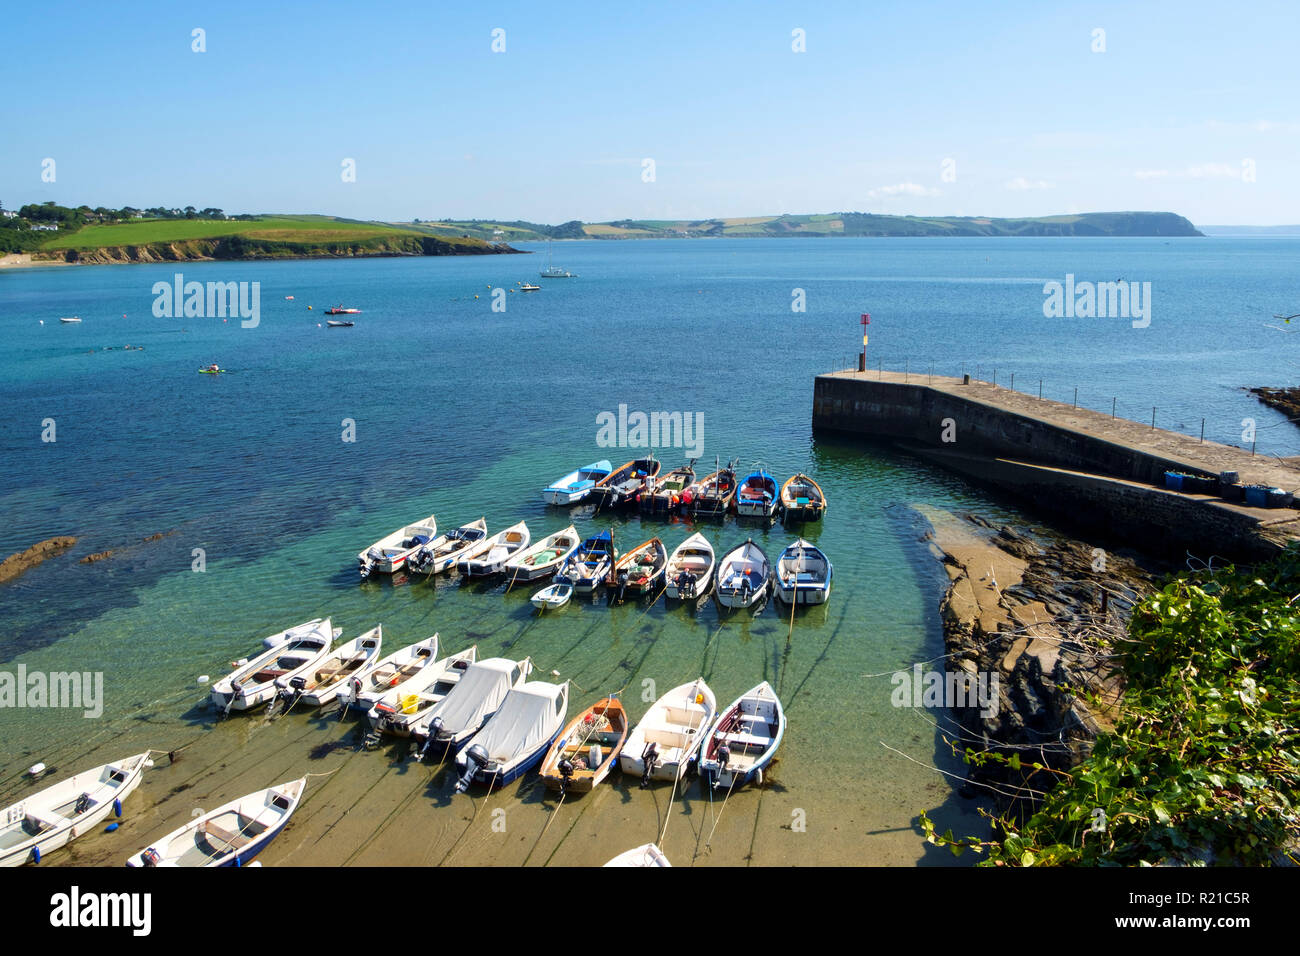 Portscatho, Regno Unito - 25 Luglio 2017: vista del porto e del litorale a Portscatho, Cornwall, Regno Unito su una bella mattina d'estate. Portscatho è una famiglia di famose località meta di vacanza. Foto Stock